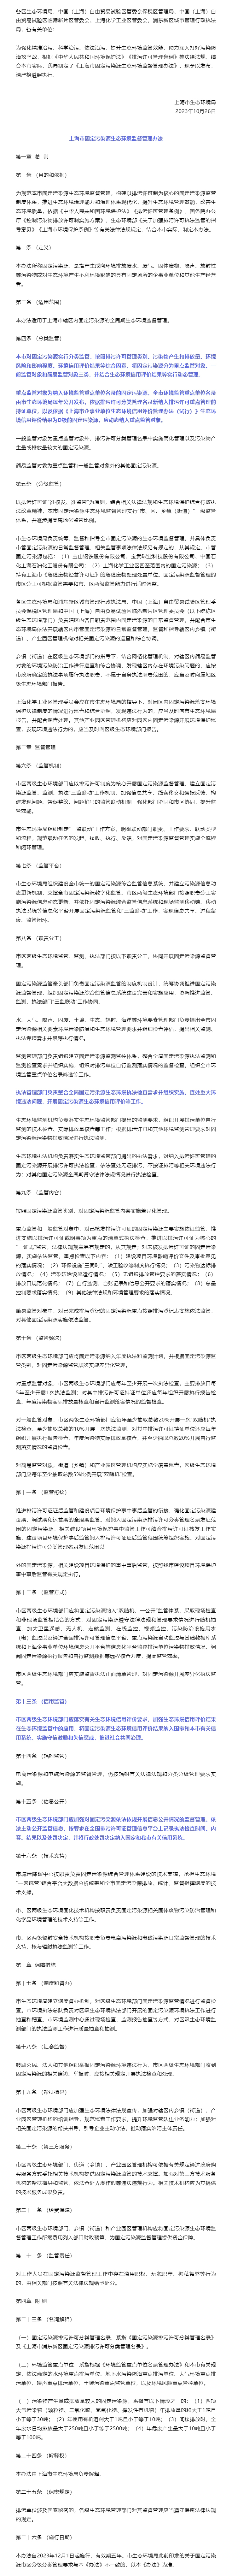 上海市生态环境局关于印发《上海市固定污染源生态环境监督管理办法》的通知.jpg